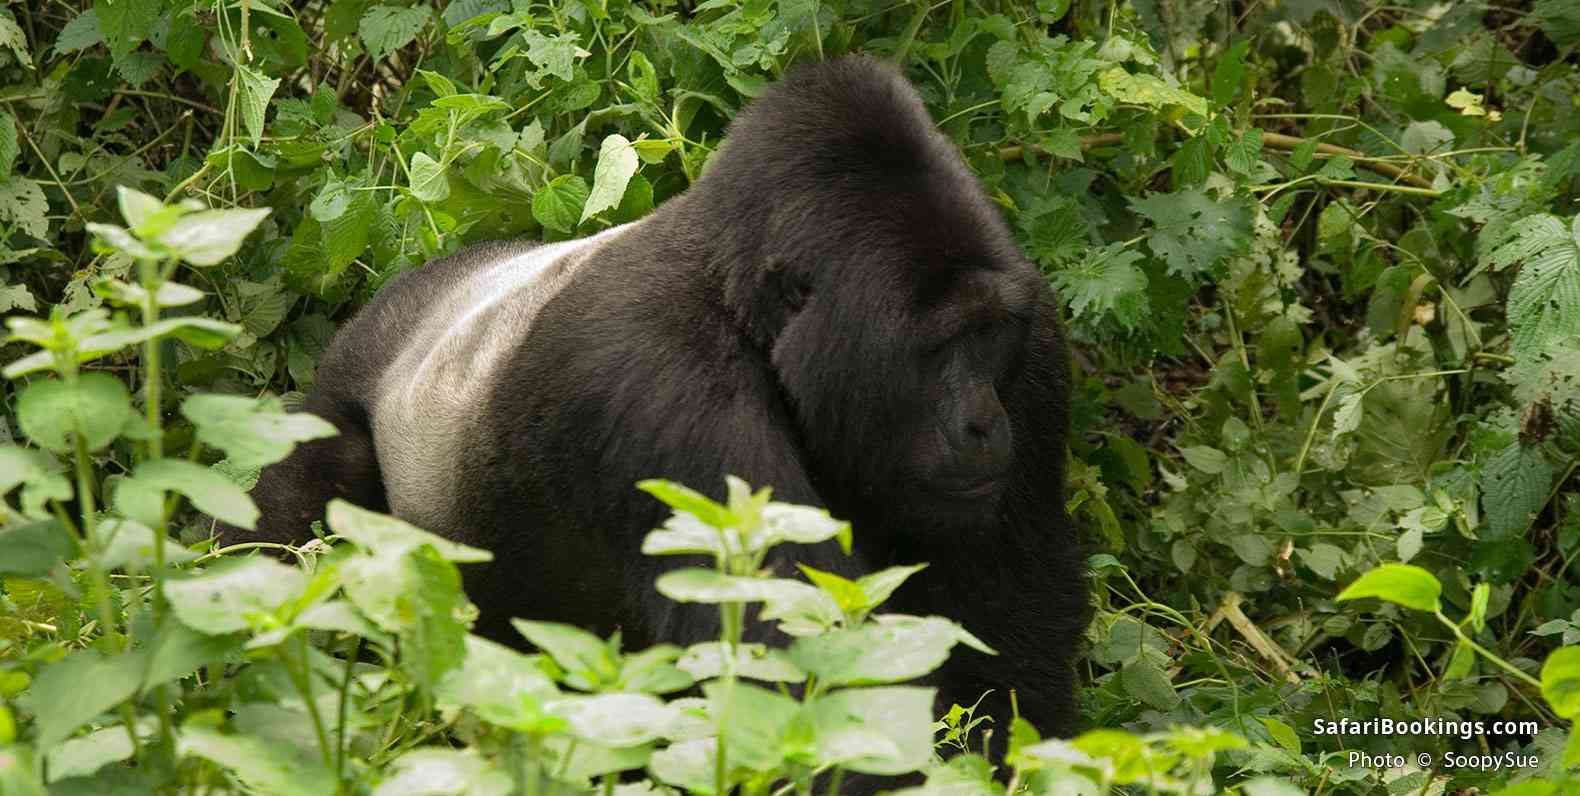 Adult male silverback gorilla